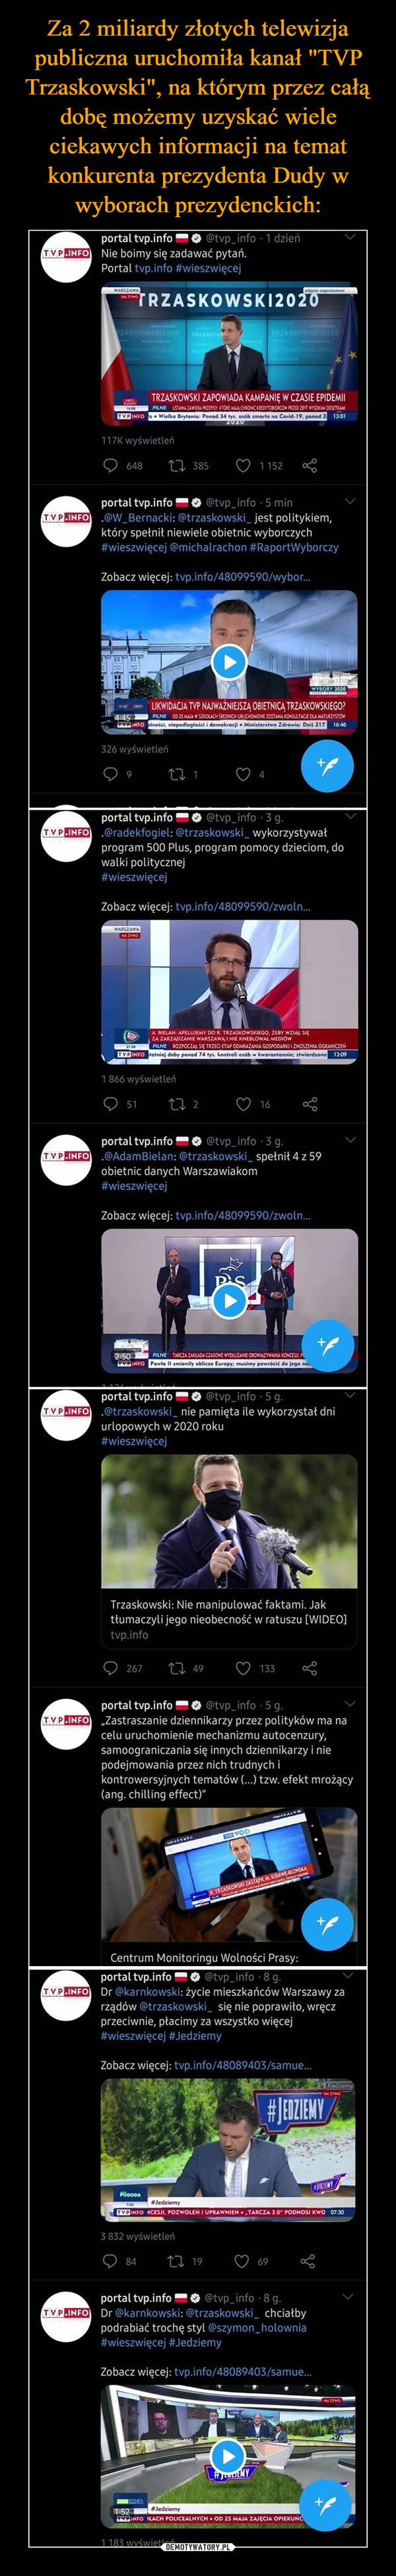 Za 2 miliardy złotych telewizja publiczna uruchomiła kanał "TVP Trzaskowski", na którym przez całą dobę możemy uzyskać wiele ciekawych informacji na temat konkurenta prezydenta Dudy w wyborach prezydenckich: